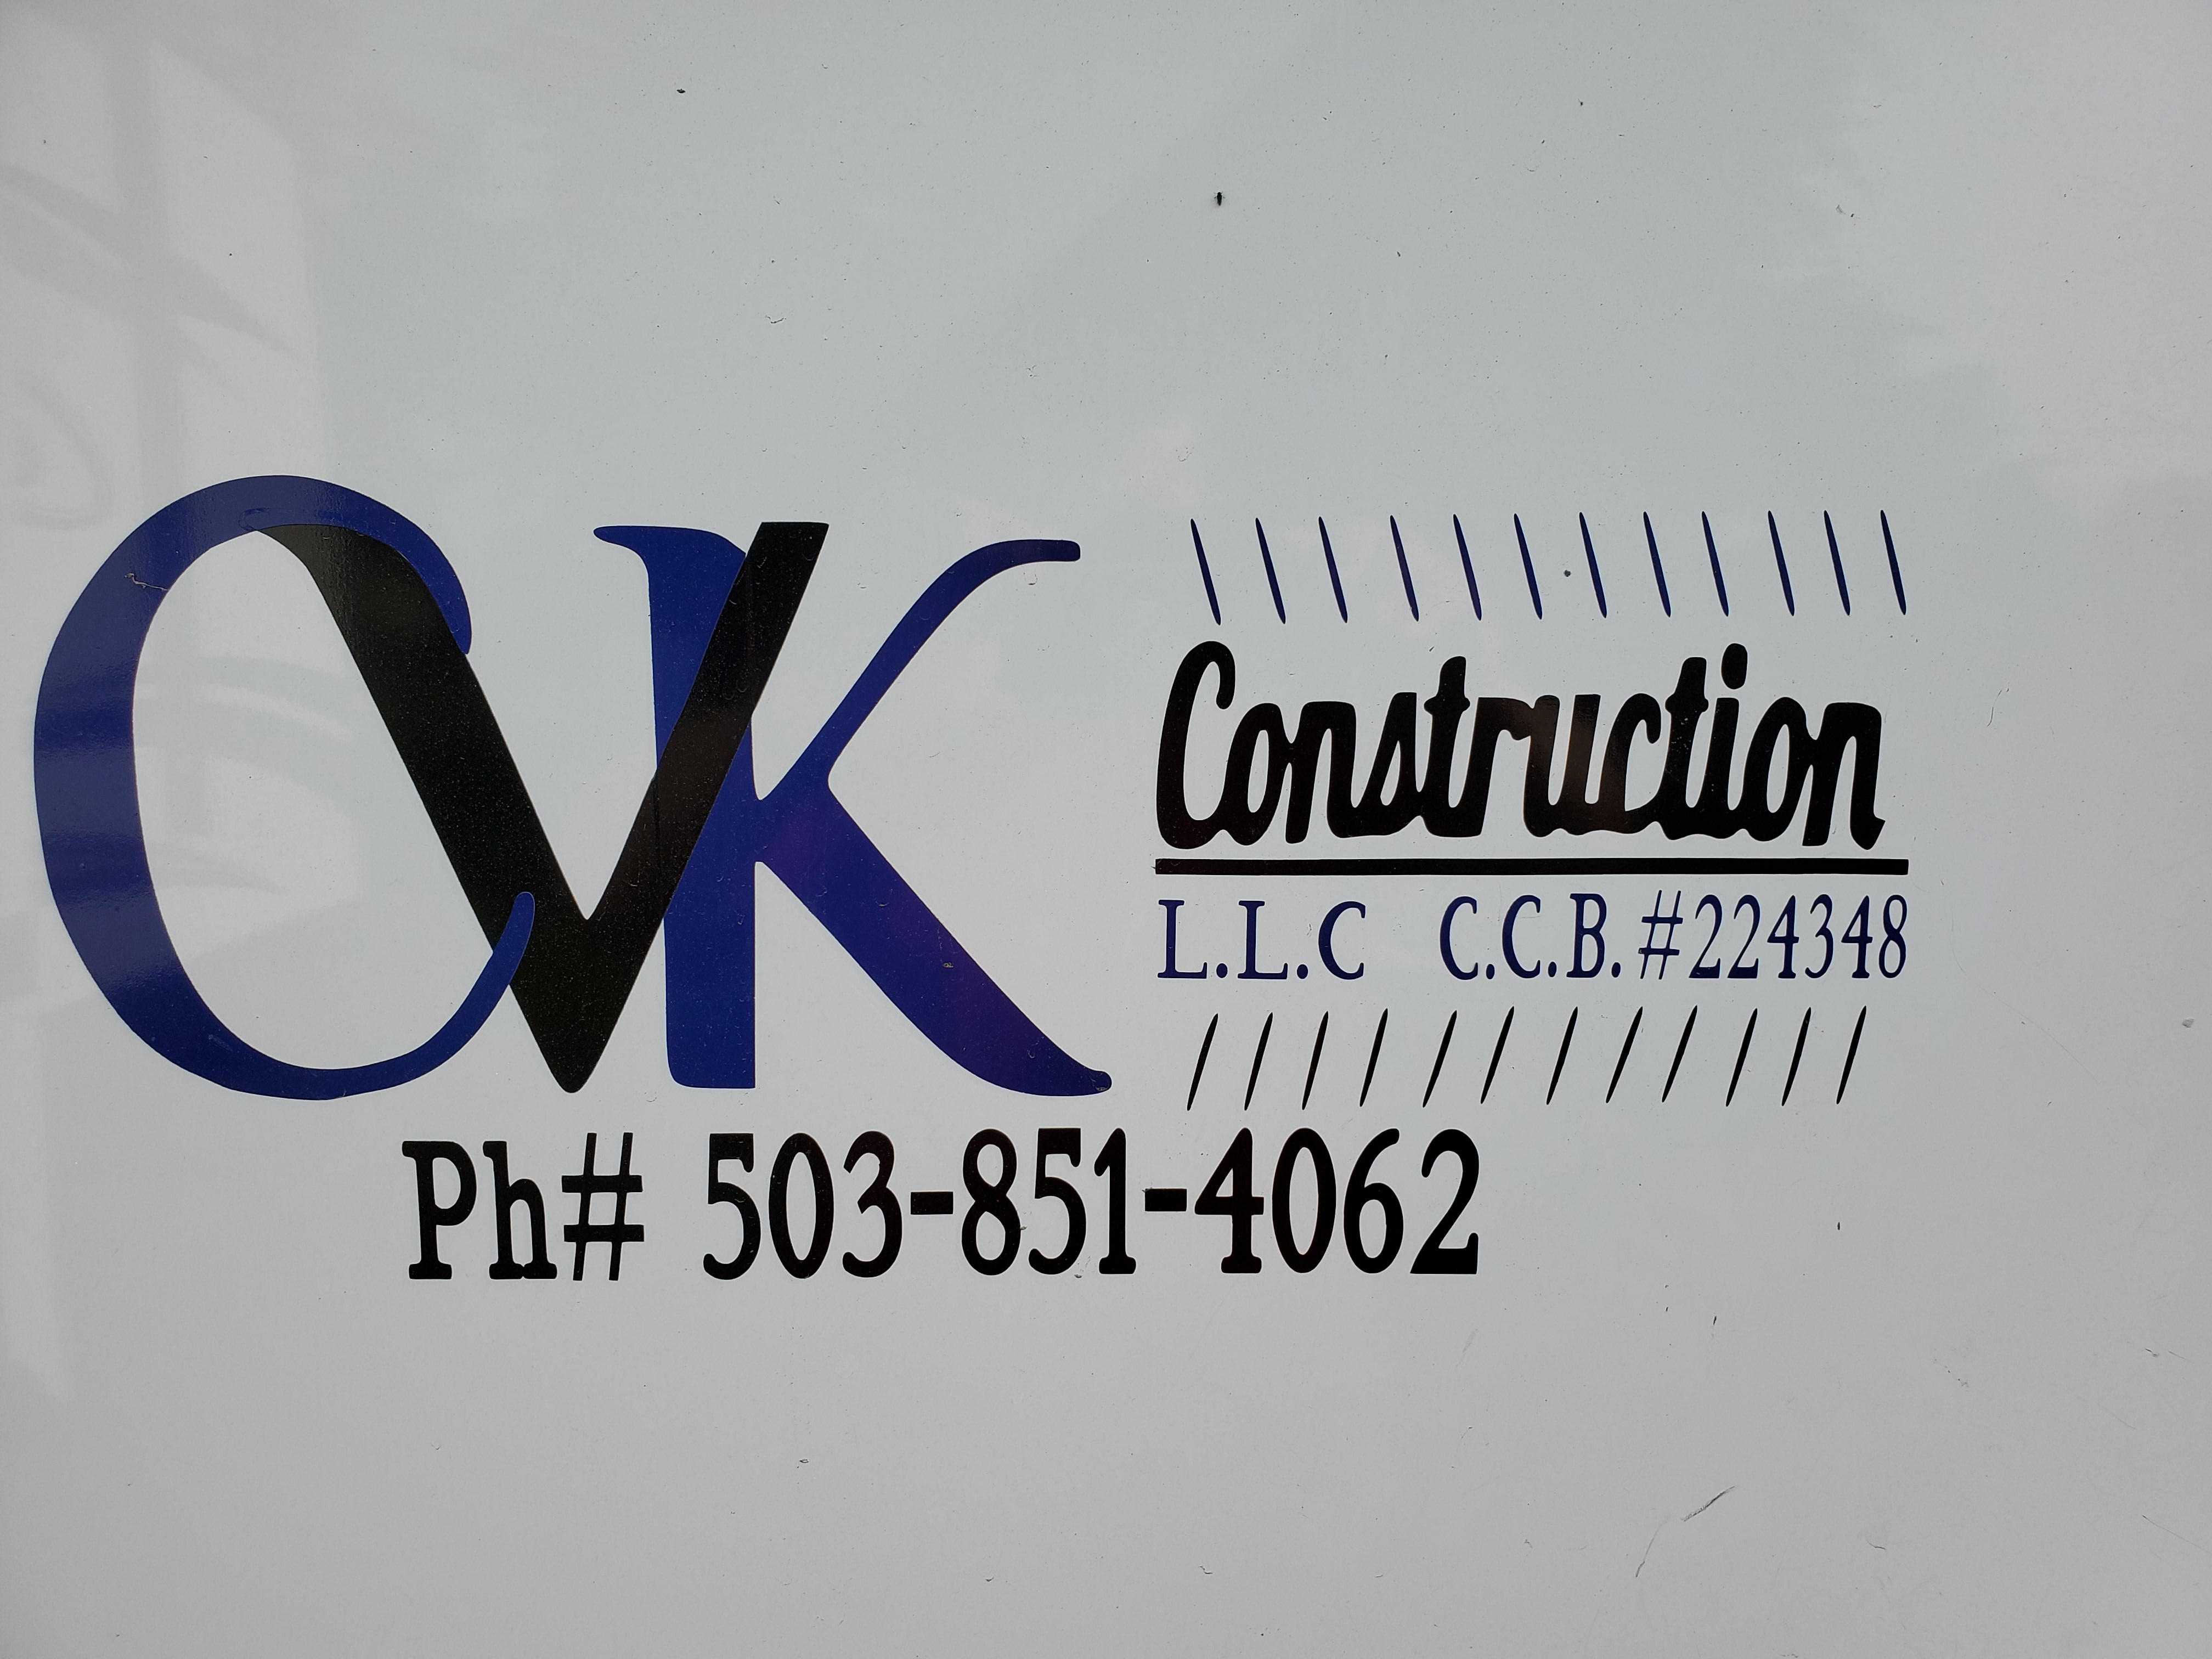 CVK Construction, LLC Logo